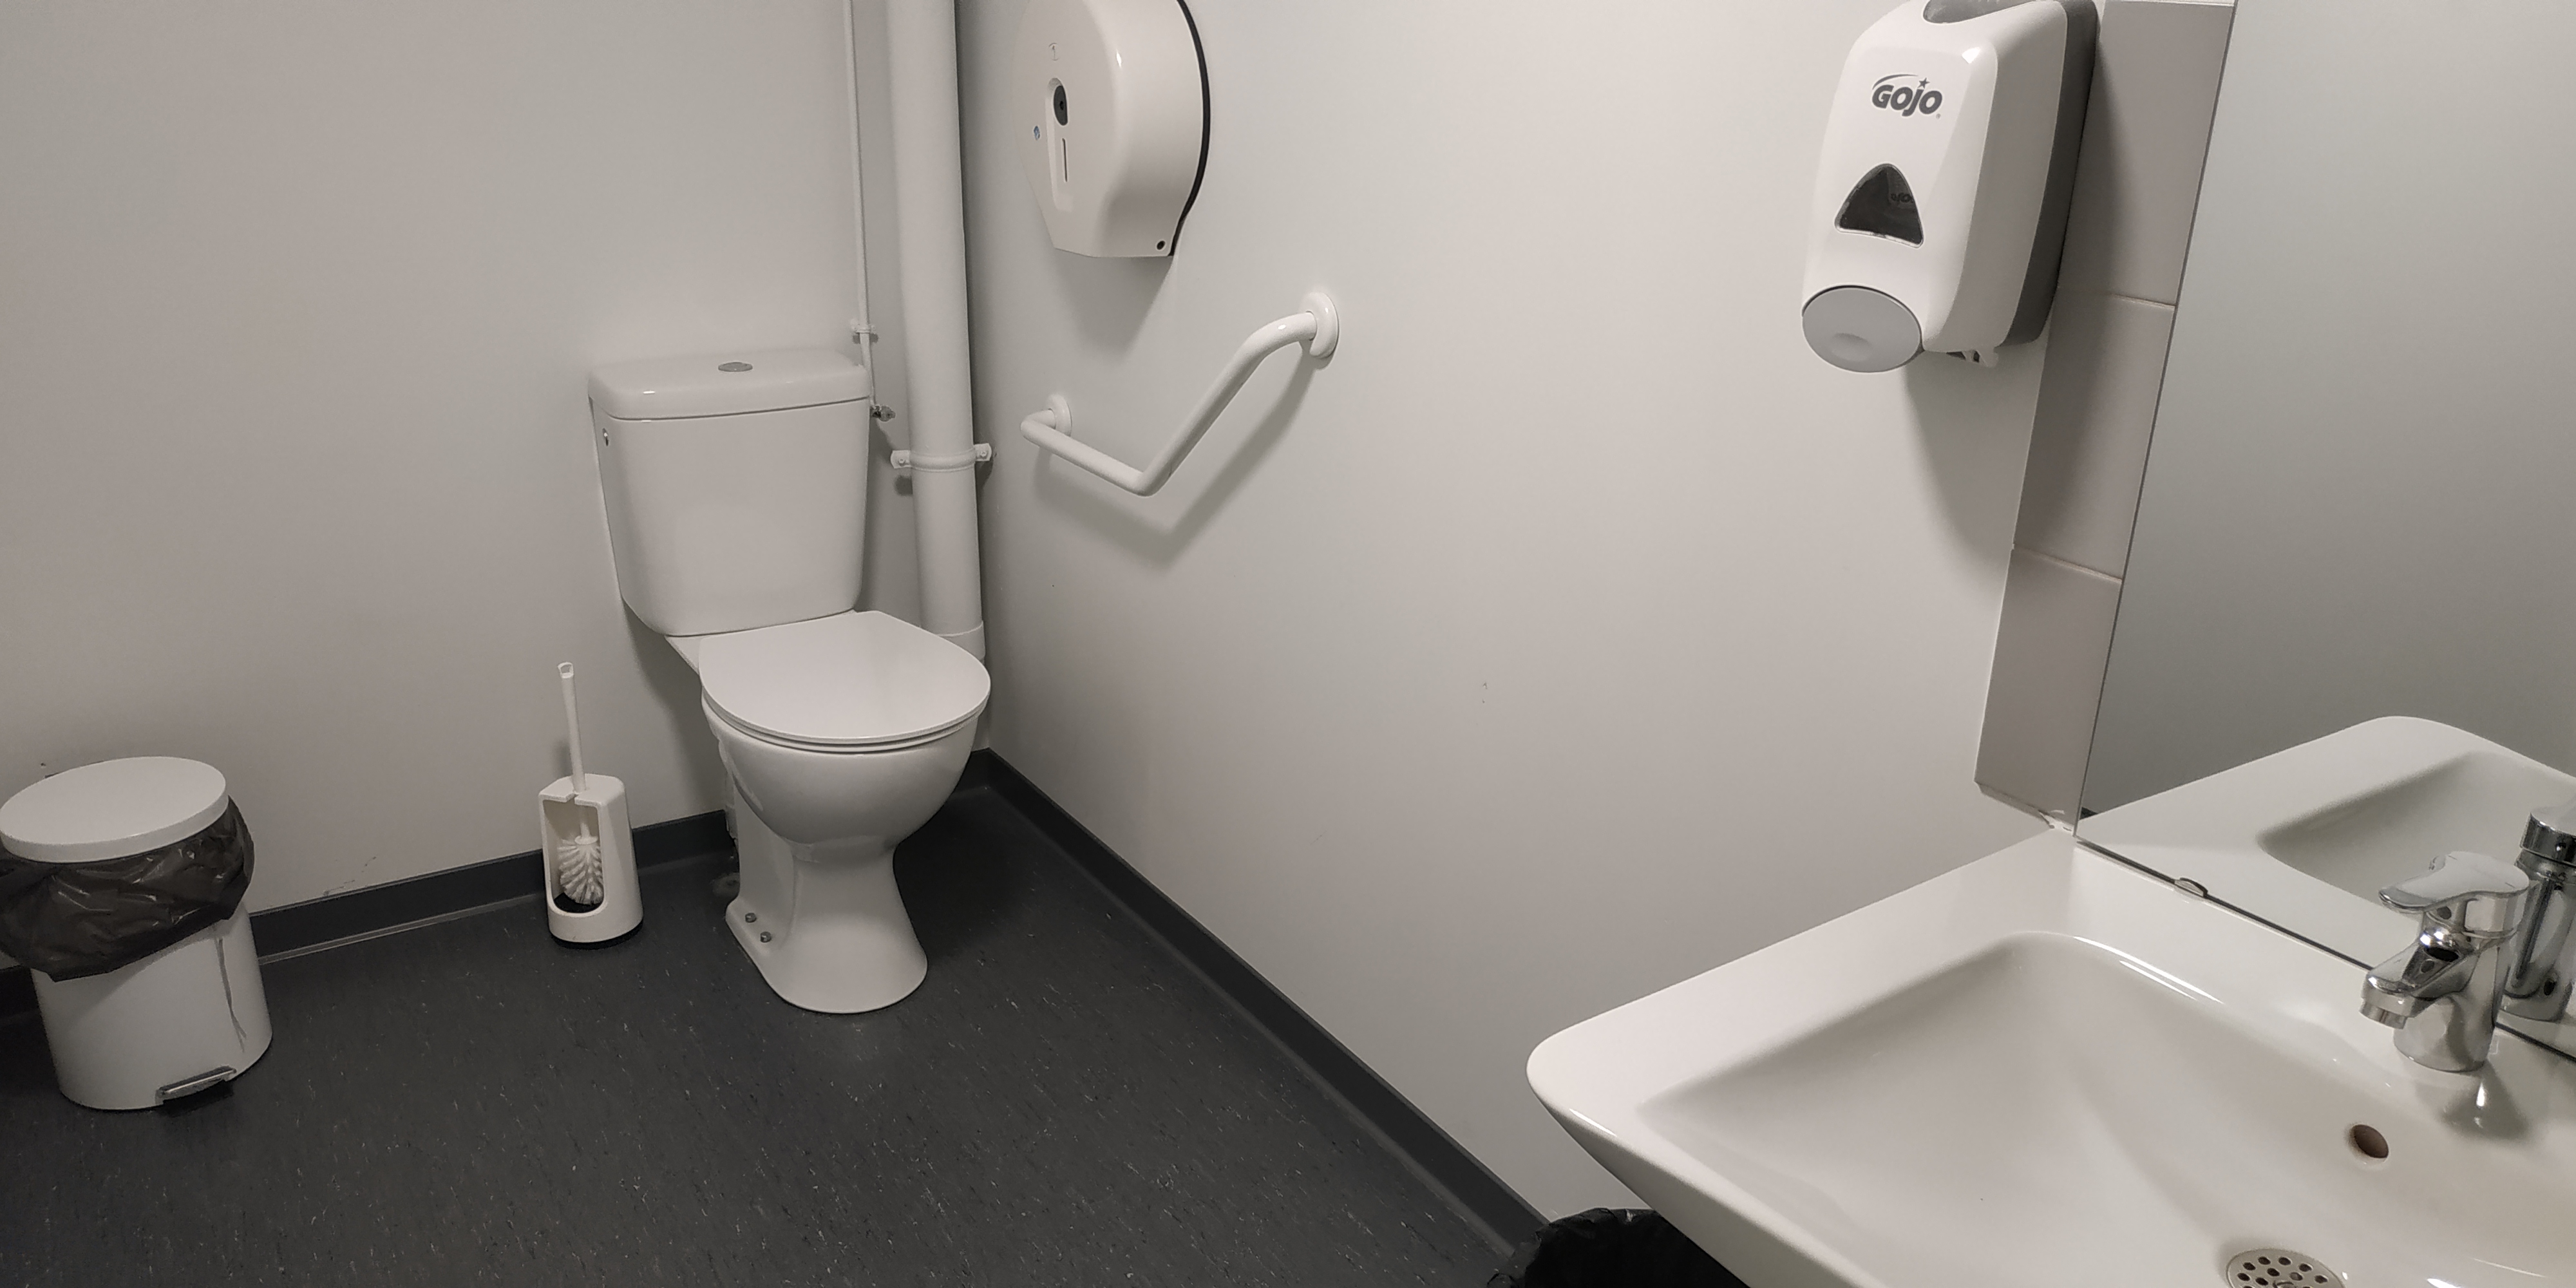 Les toilettes d'handicapés, vu grand angle, avec tout à gauche une poubelle, un lave-chiotte sur la droite, une toilette sur sa droite, bordé de tuyaux fins. A droite des toilettes il y a un distributeur de papier toilette. Vers la droite il y a un distributeur de savon, un lavabo avec un miroir.